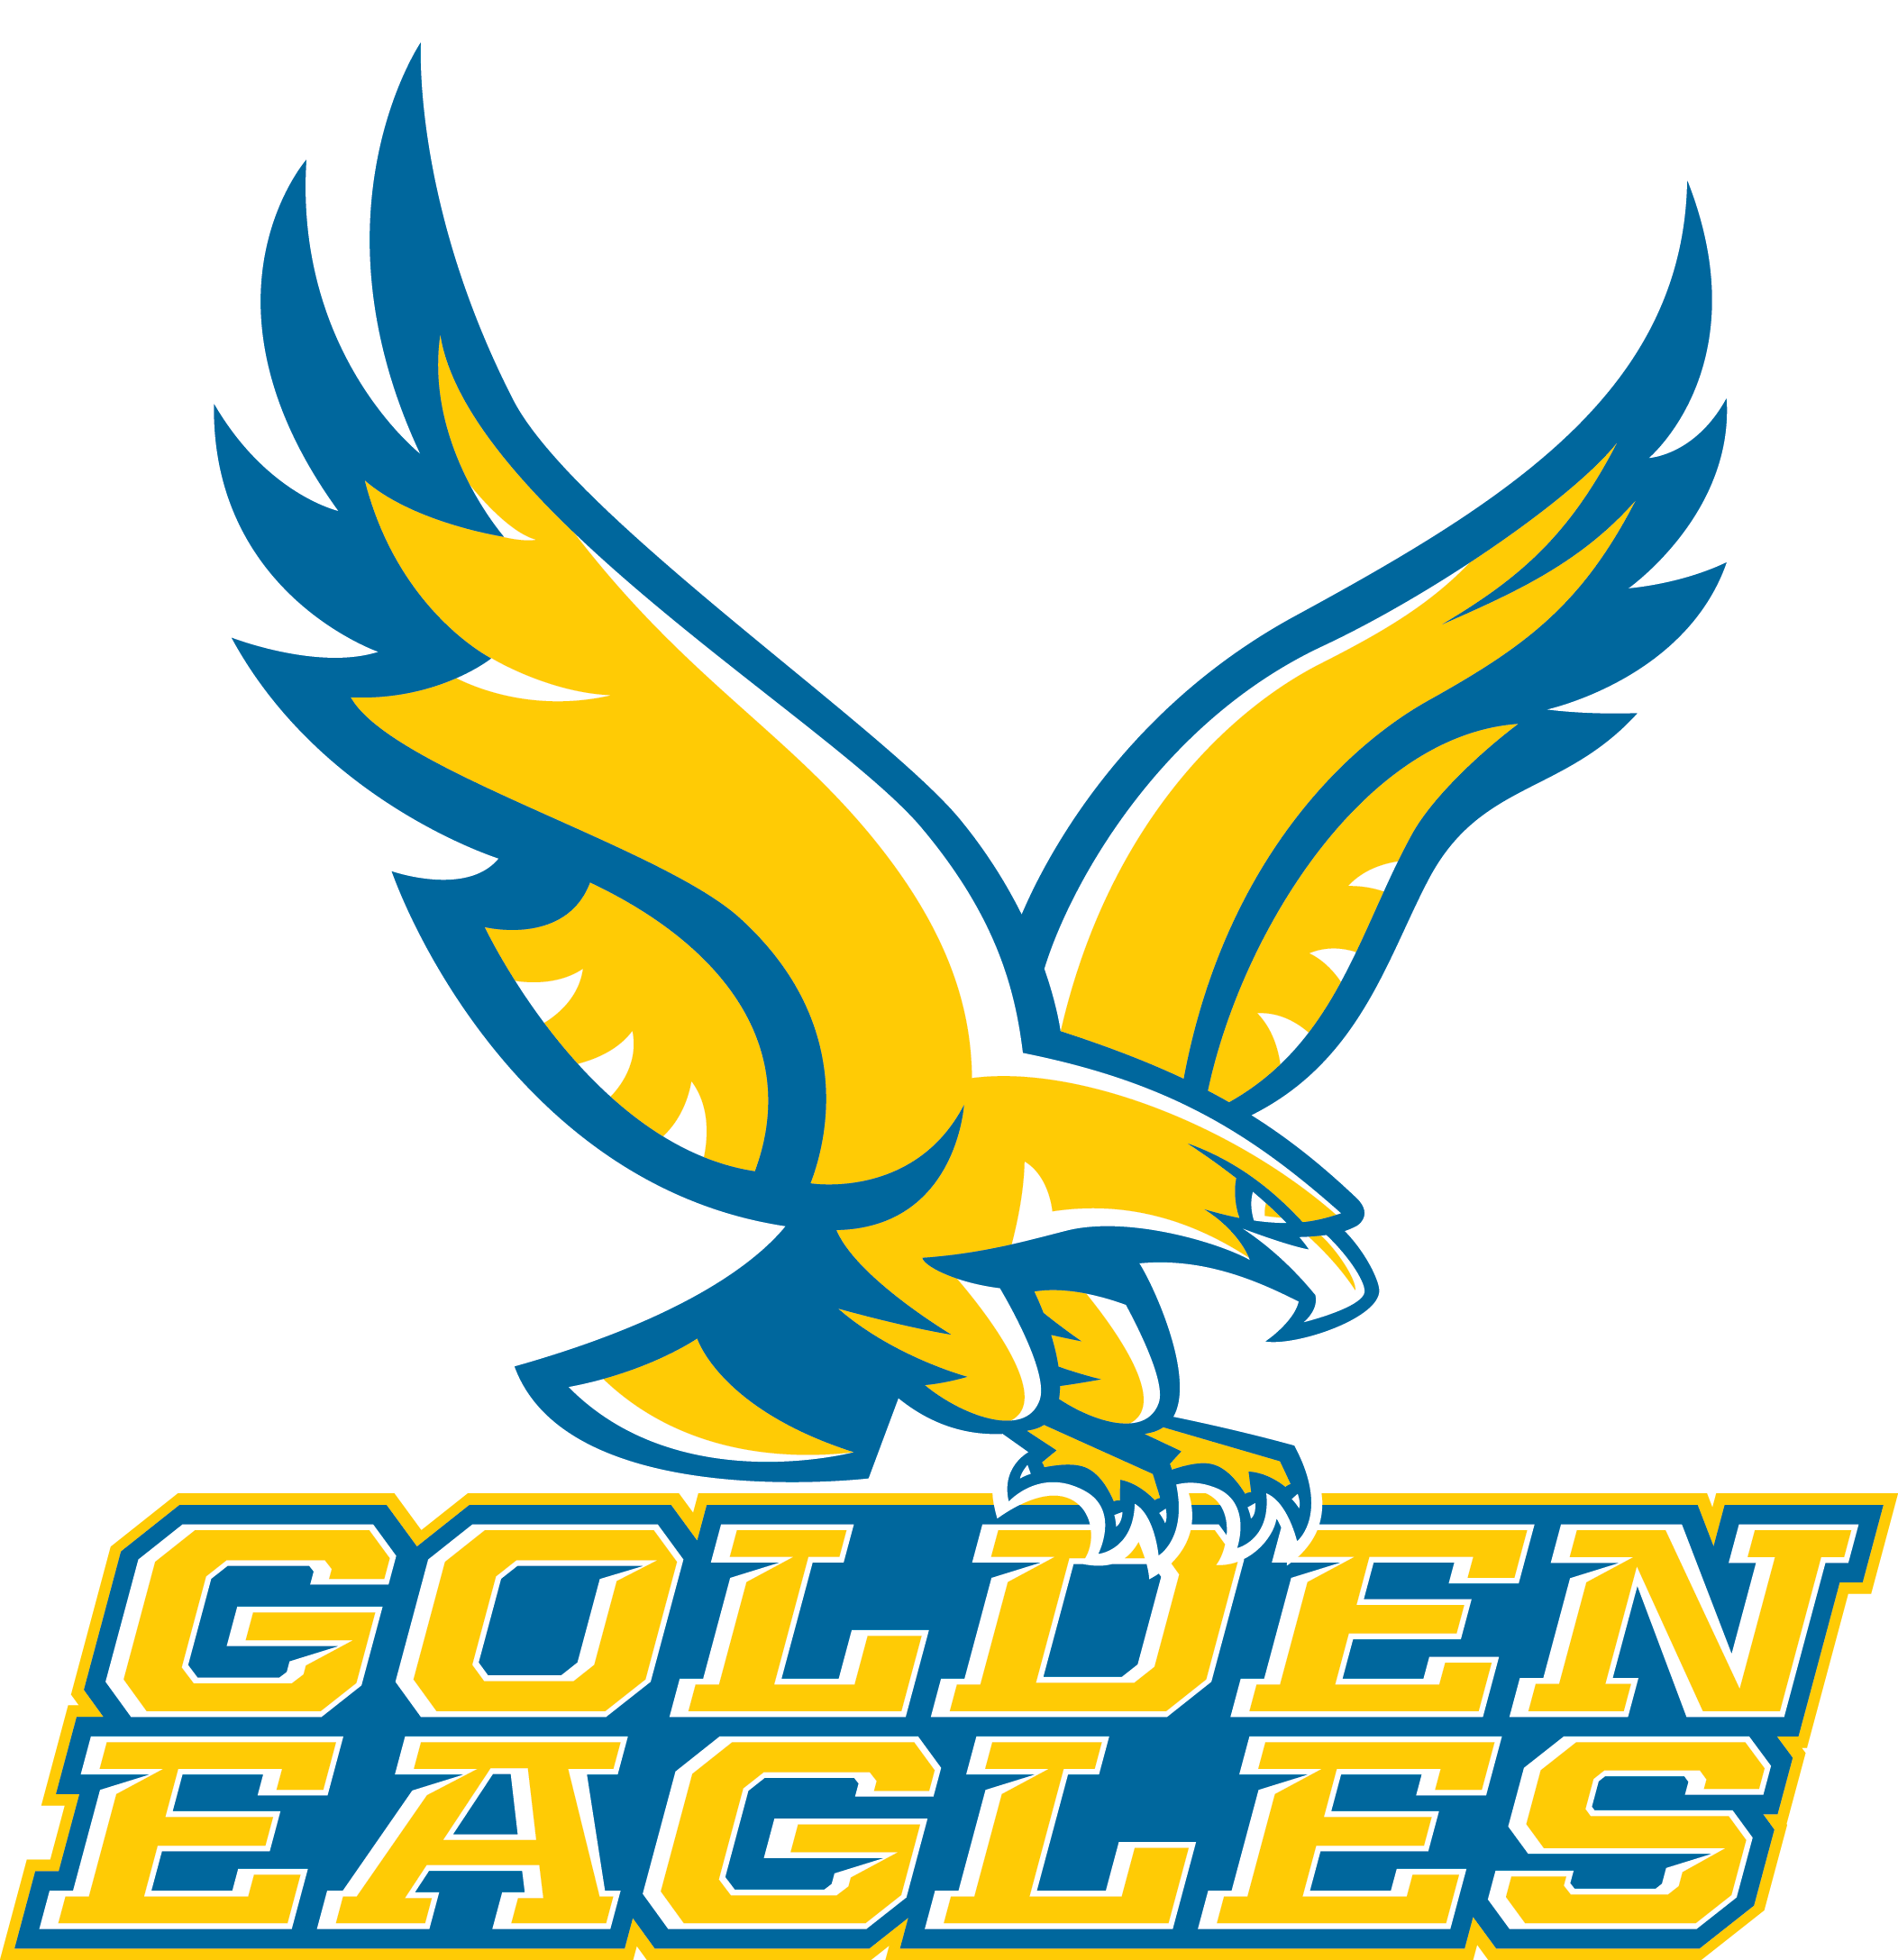 Yellow Blue Eagle Logo - Athletic Logos - About Us - Holy Family Catholic Schools